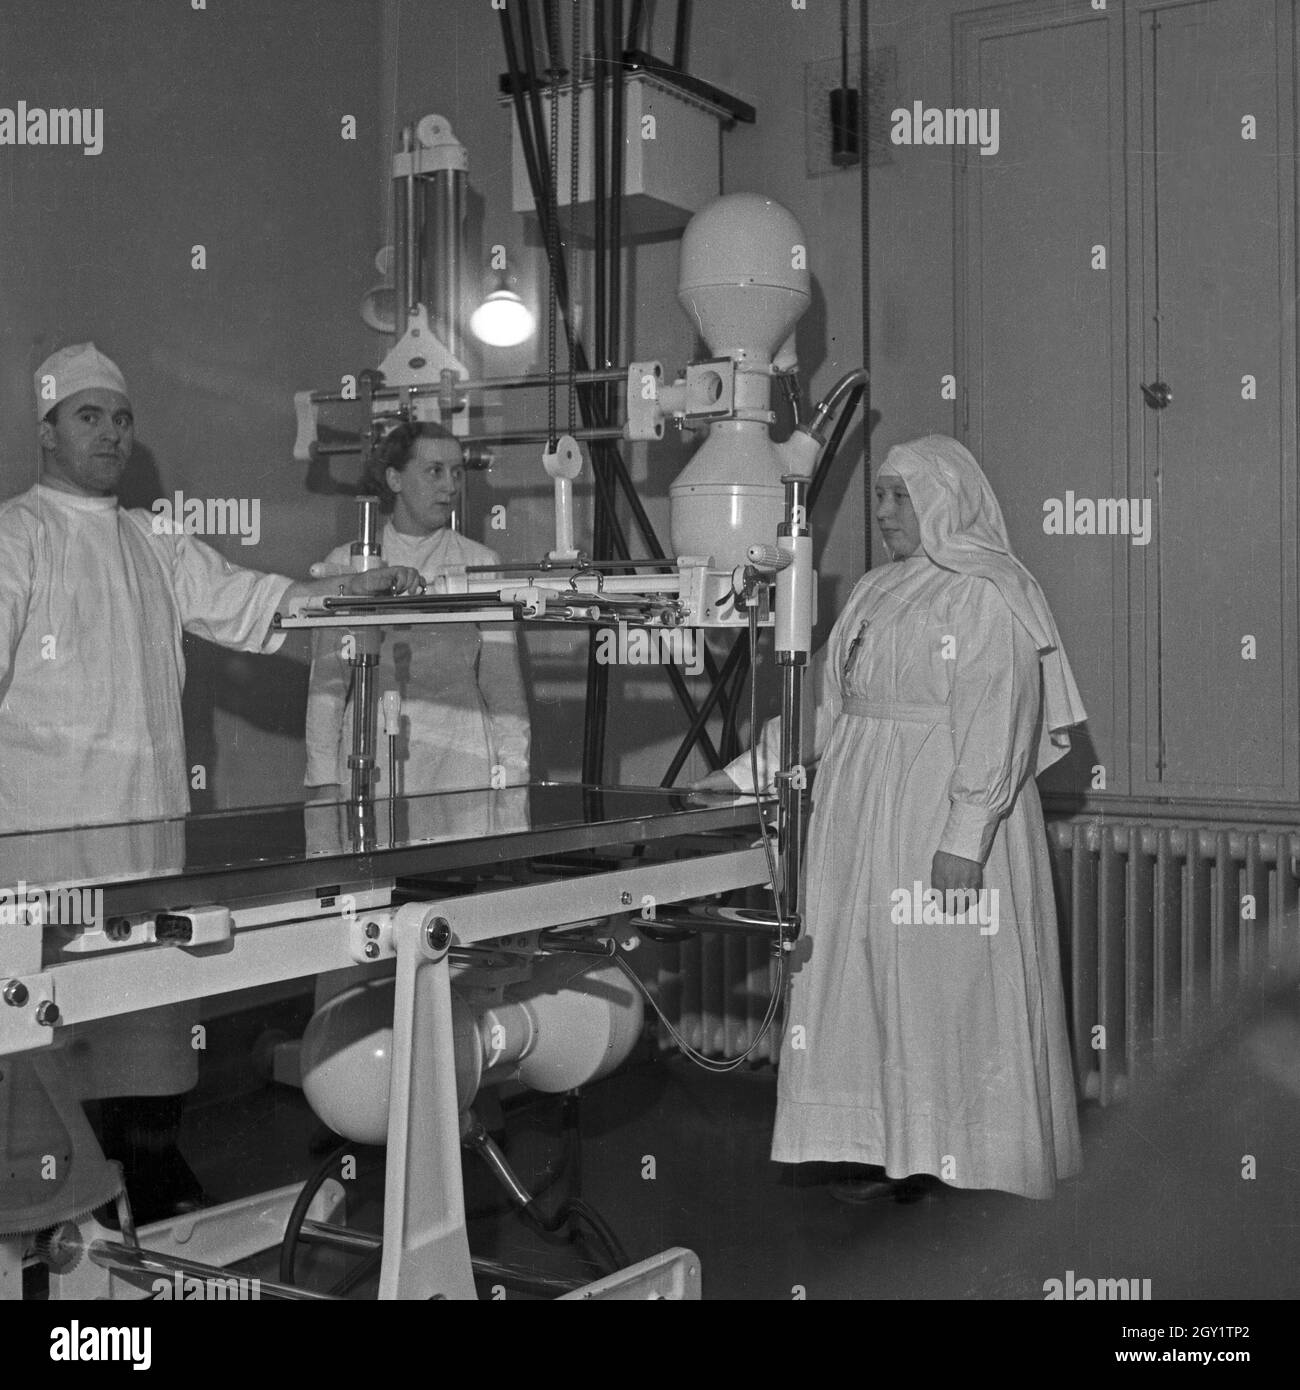 Das Team in einem Krankenhaus, Deutschland 1930 Jahre. Squadra in un ospedale, Germania anni trenta. Foto Stock